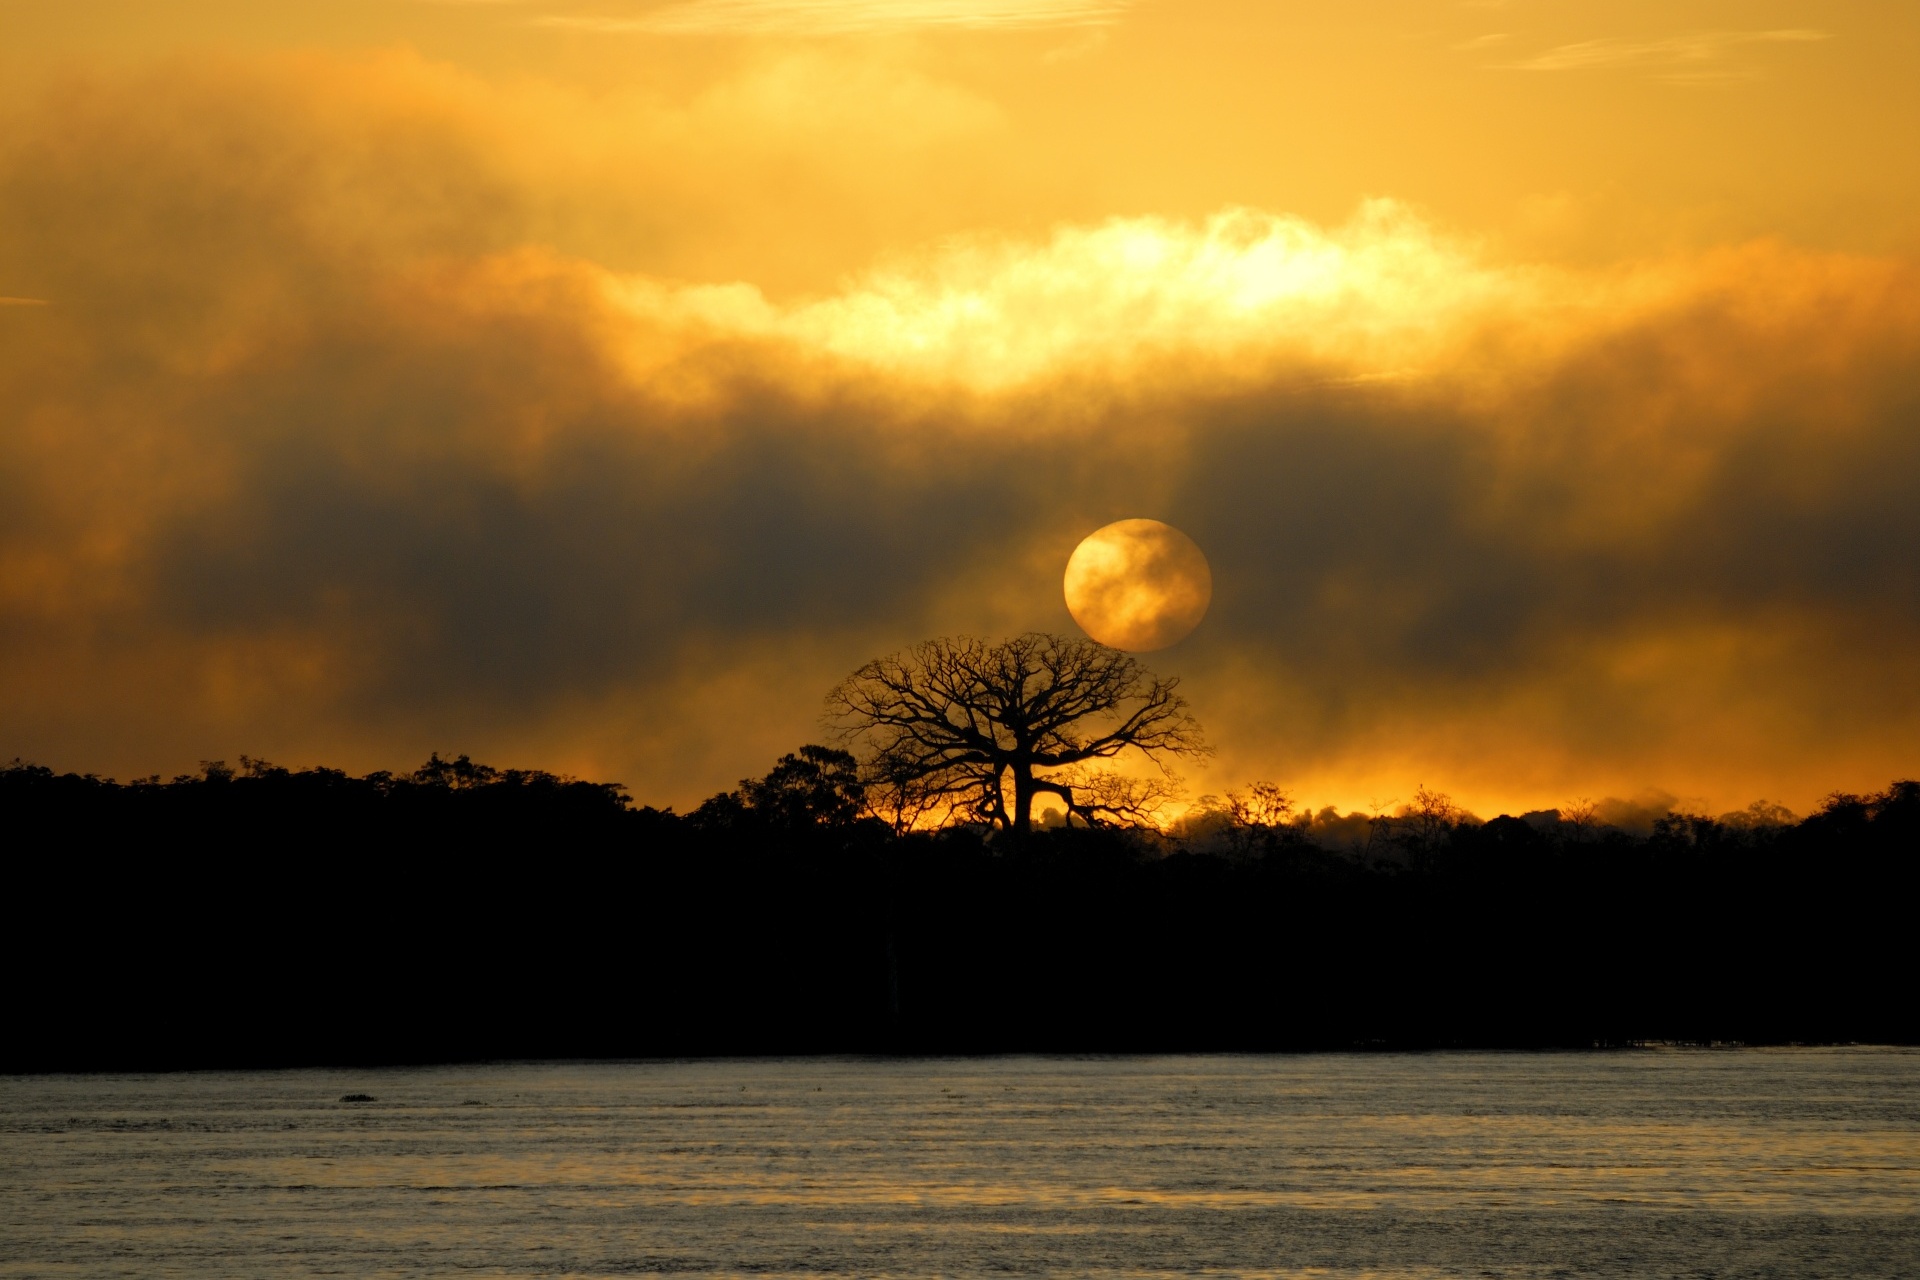 ブラジル、アマゾナス州、マナウス近くのアマゾン川に昇る朝日